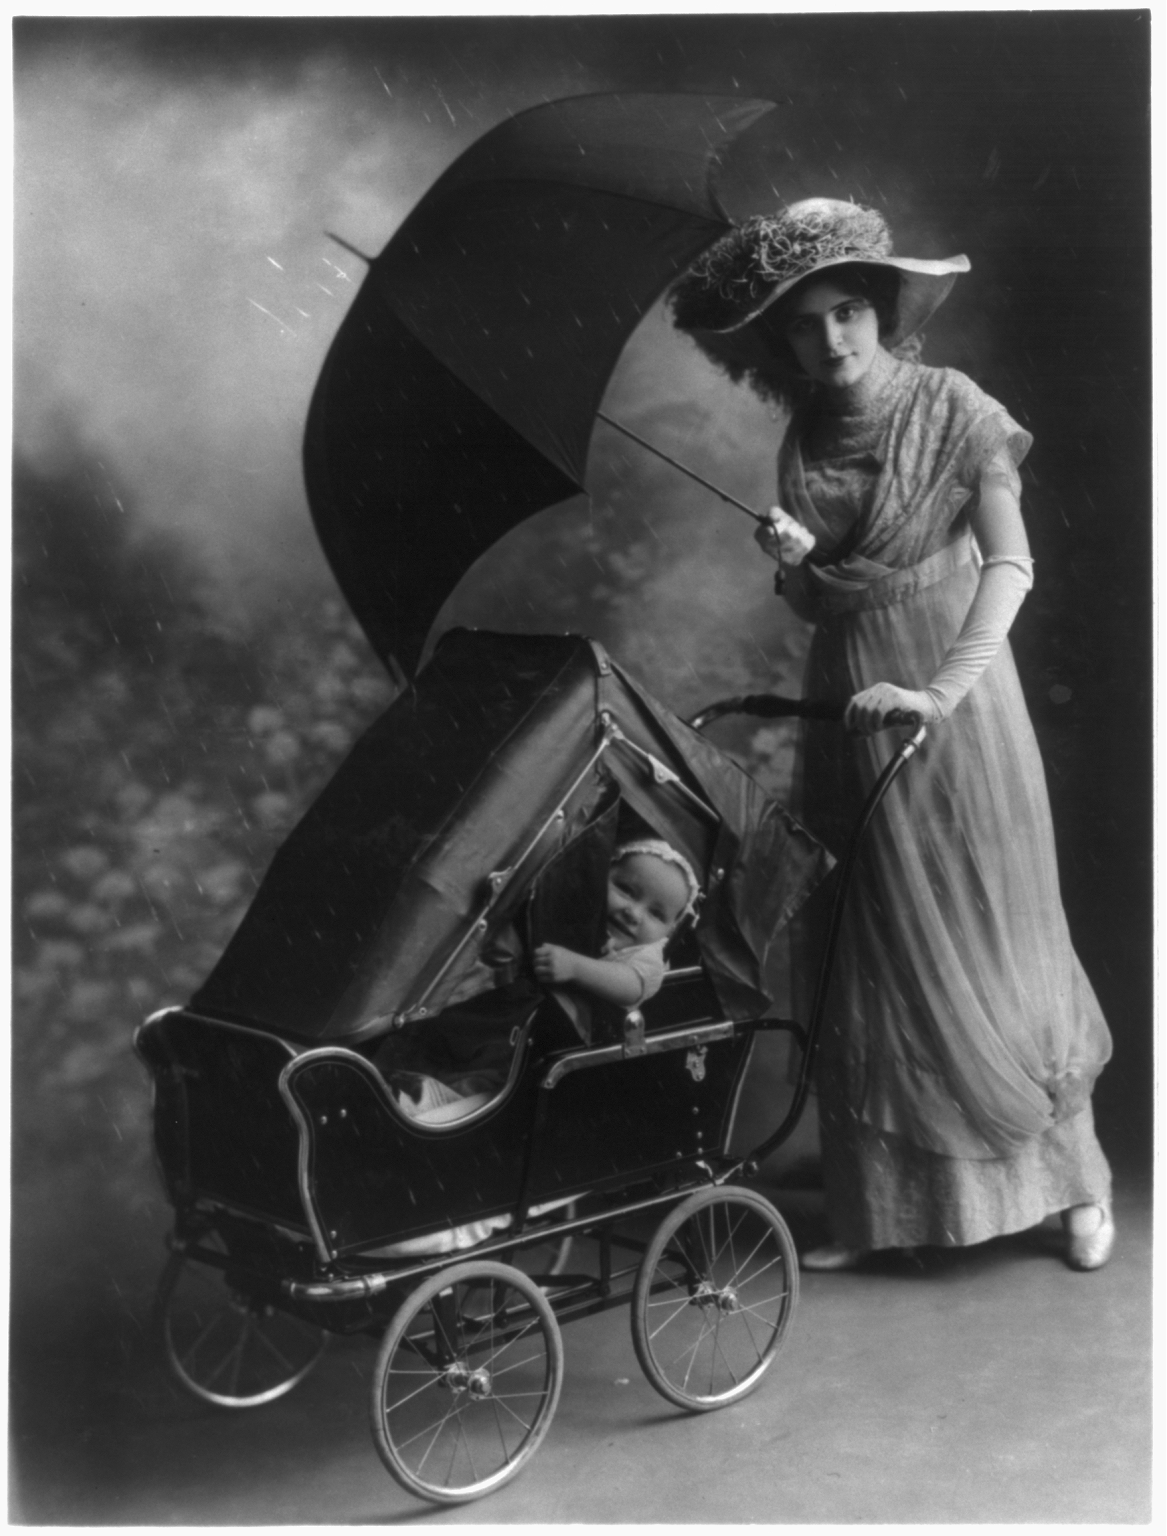 1800s baby stroller